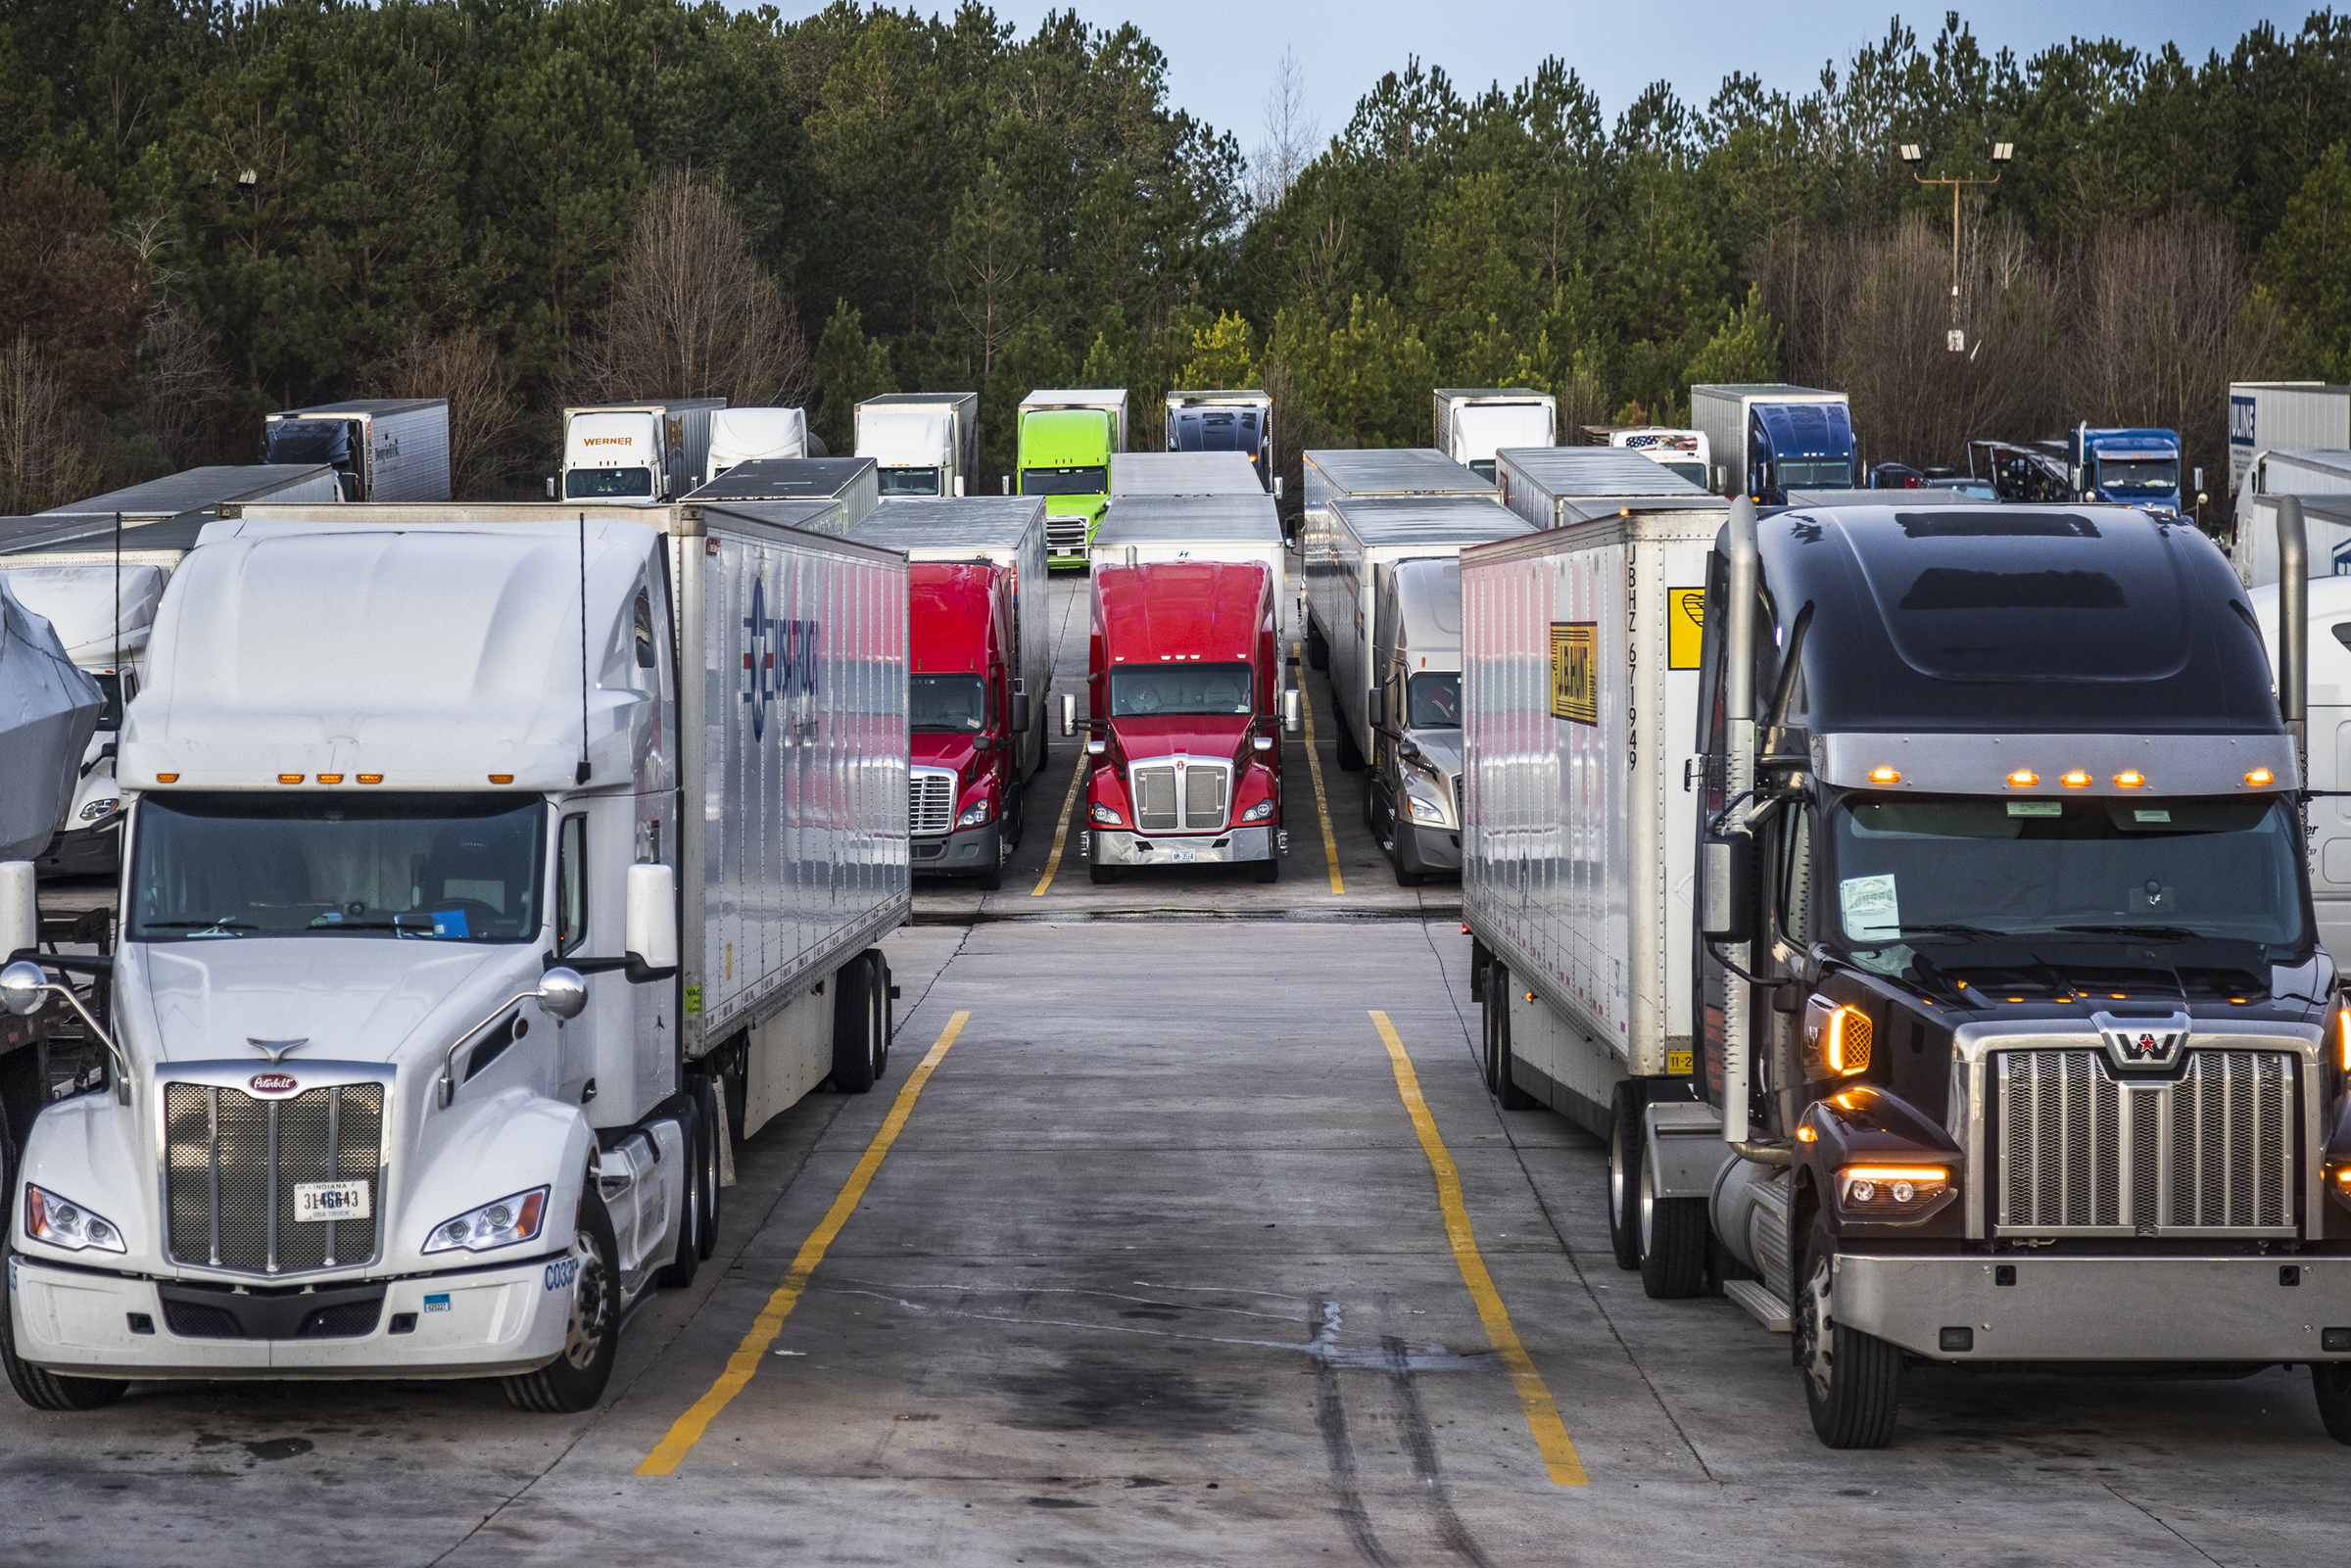 Trucks outside Atlanta GA on February 5th 2022. (Andrew Hetherington for TIME)